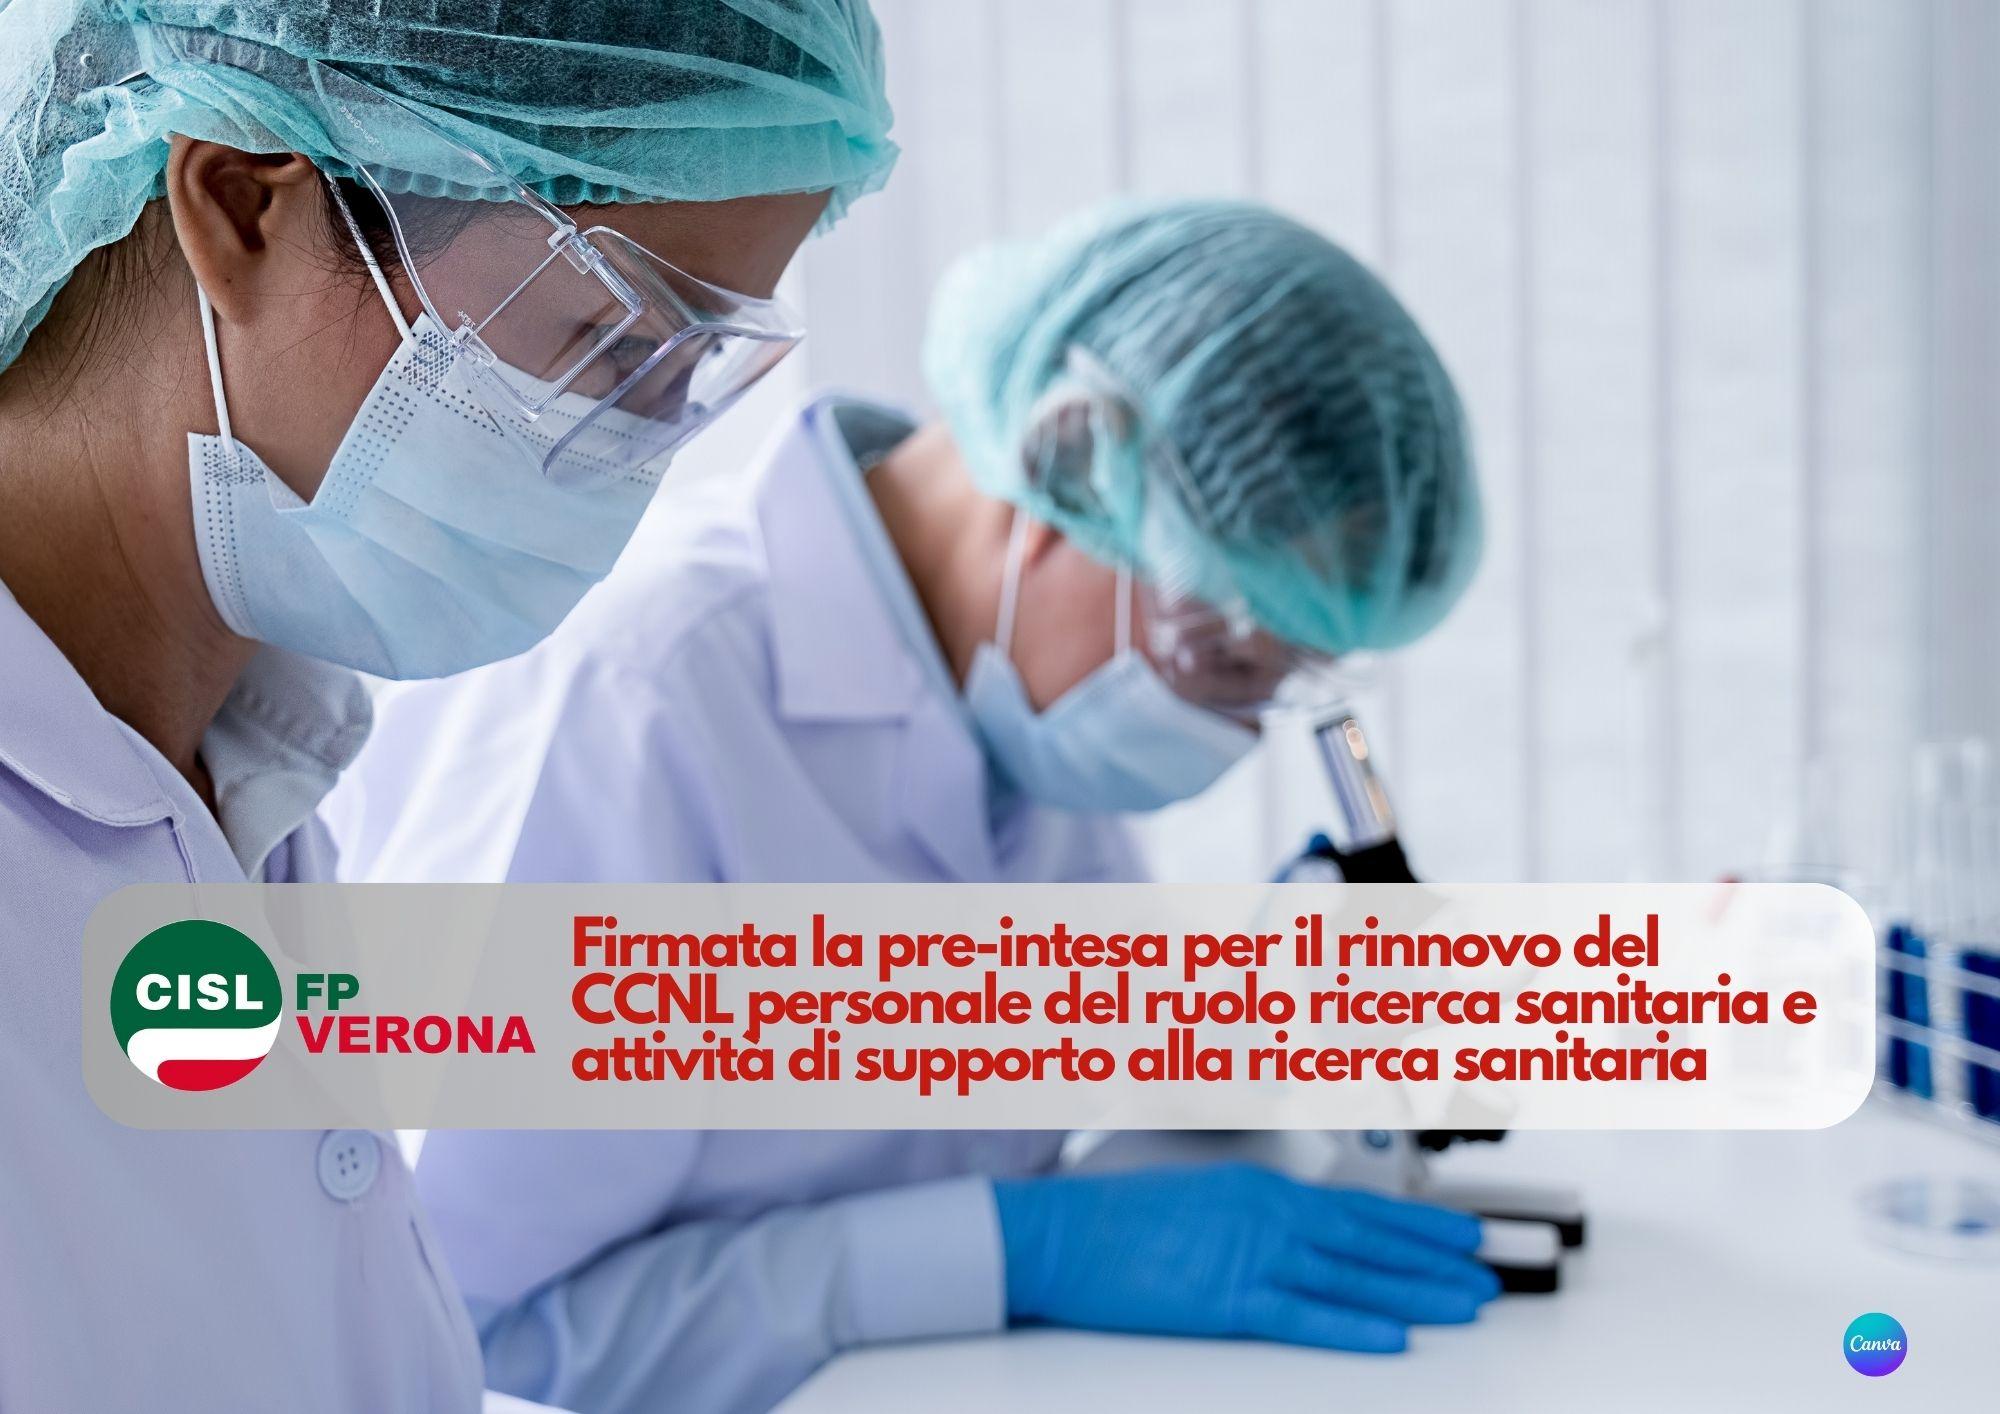 CISL FP Verona. Firmata la pre-intesa per il rinnovo del CCNL personale del ruolo ricerca sanitaria attività di supporto alla ricerca sanitaria